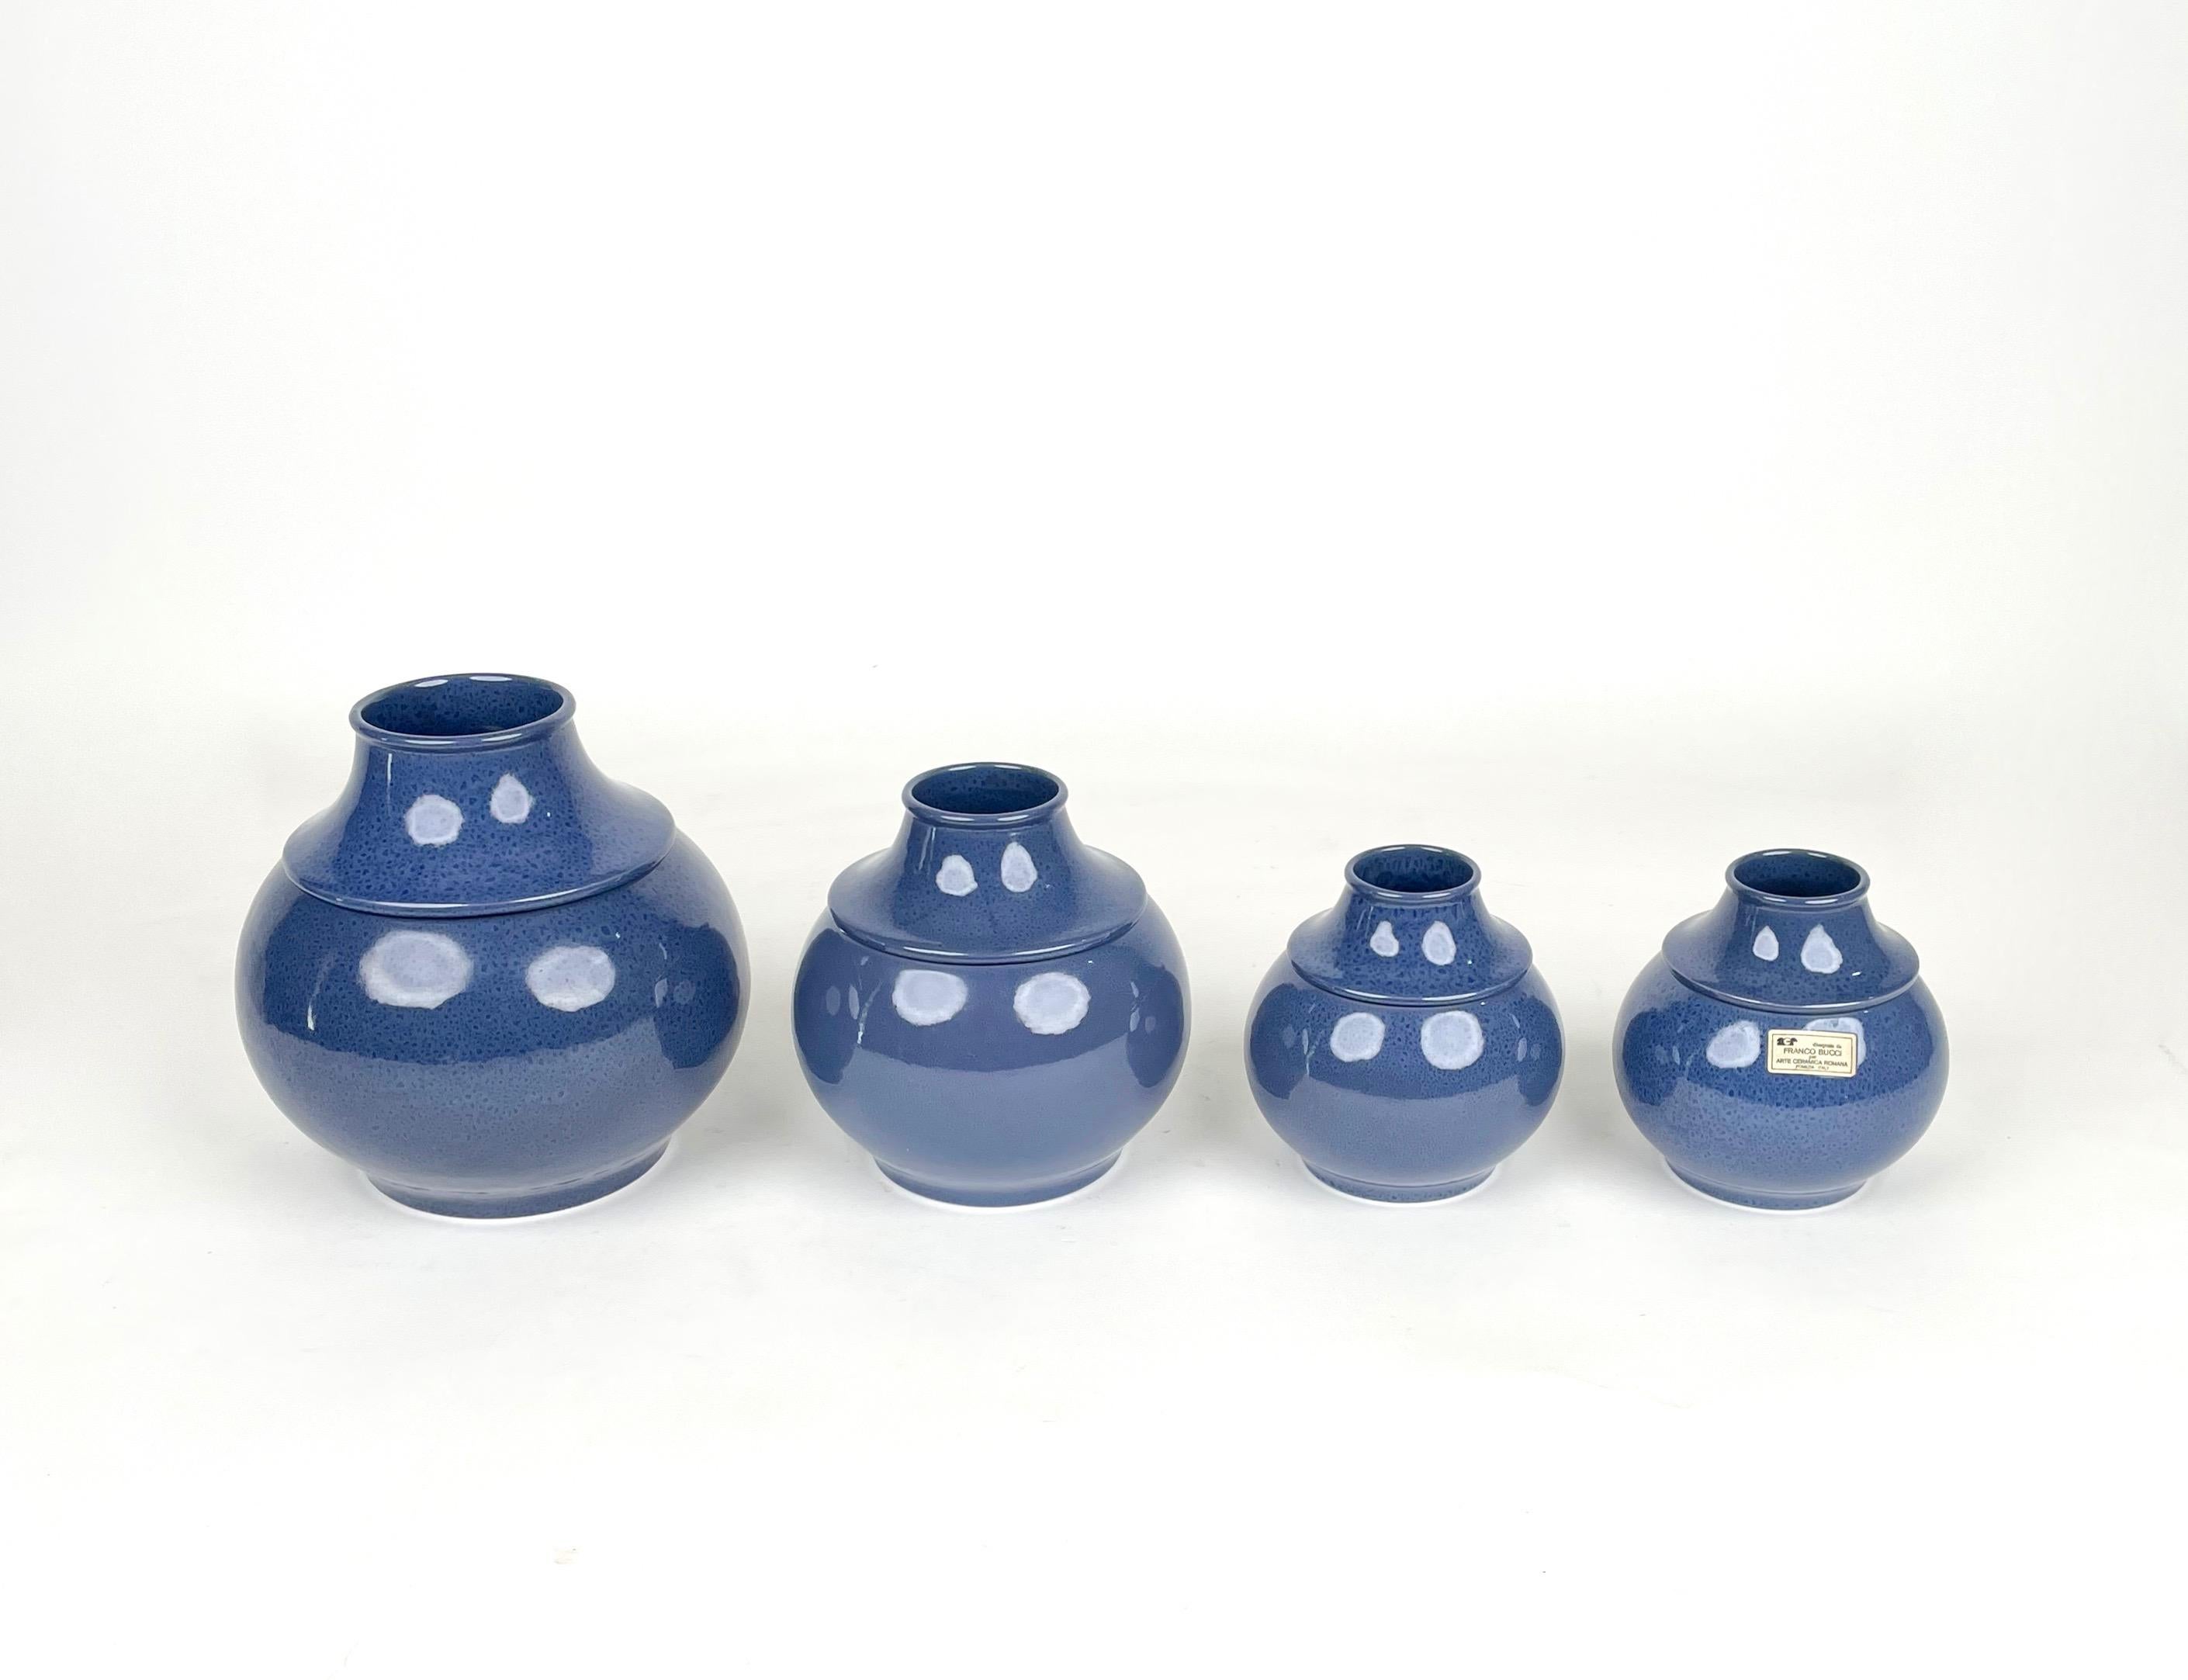 Ensemble de quatre vases en céramique de taille décroissante de Franco Bucci pour Arte Ceramica Romana, fabriqués en Italie dans les années 1970. 

Dimensions :
Vase 1 : 22cm de hauteur 22cm de diamètre 
Vade 2 : 19cm de hauteur 18cm de